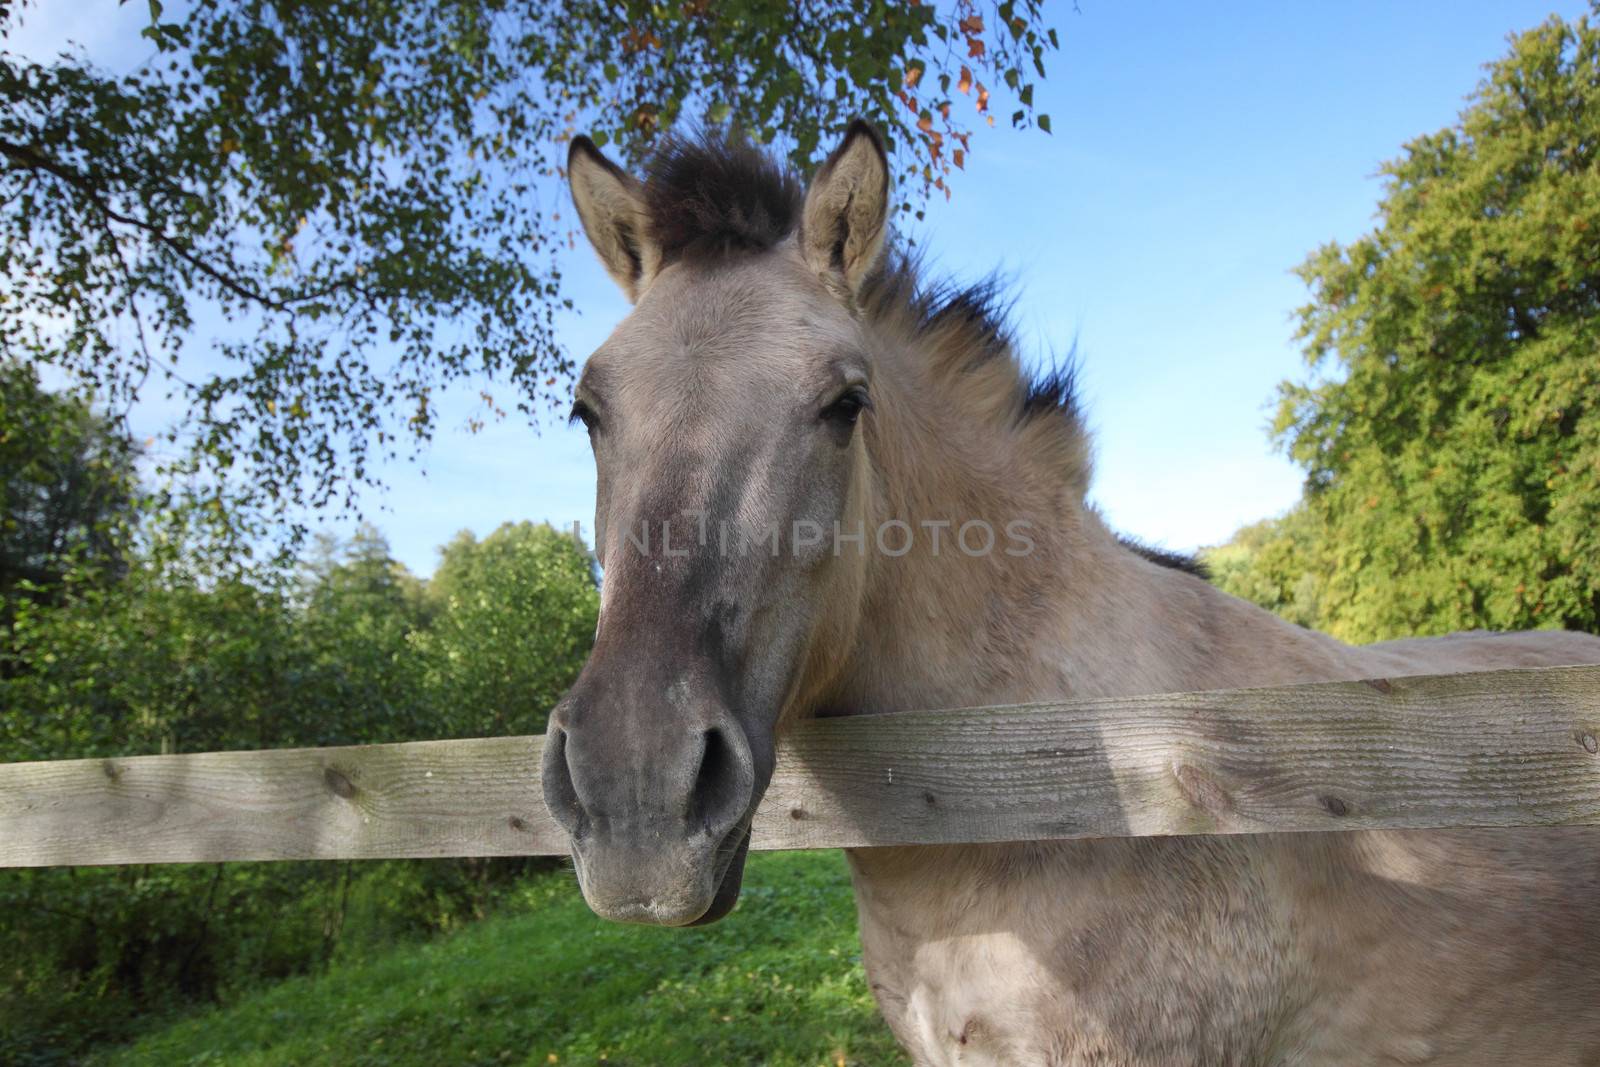 Tarpan horse by derausdo